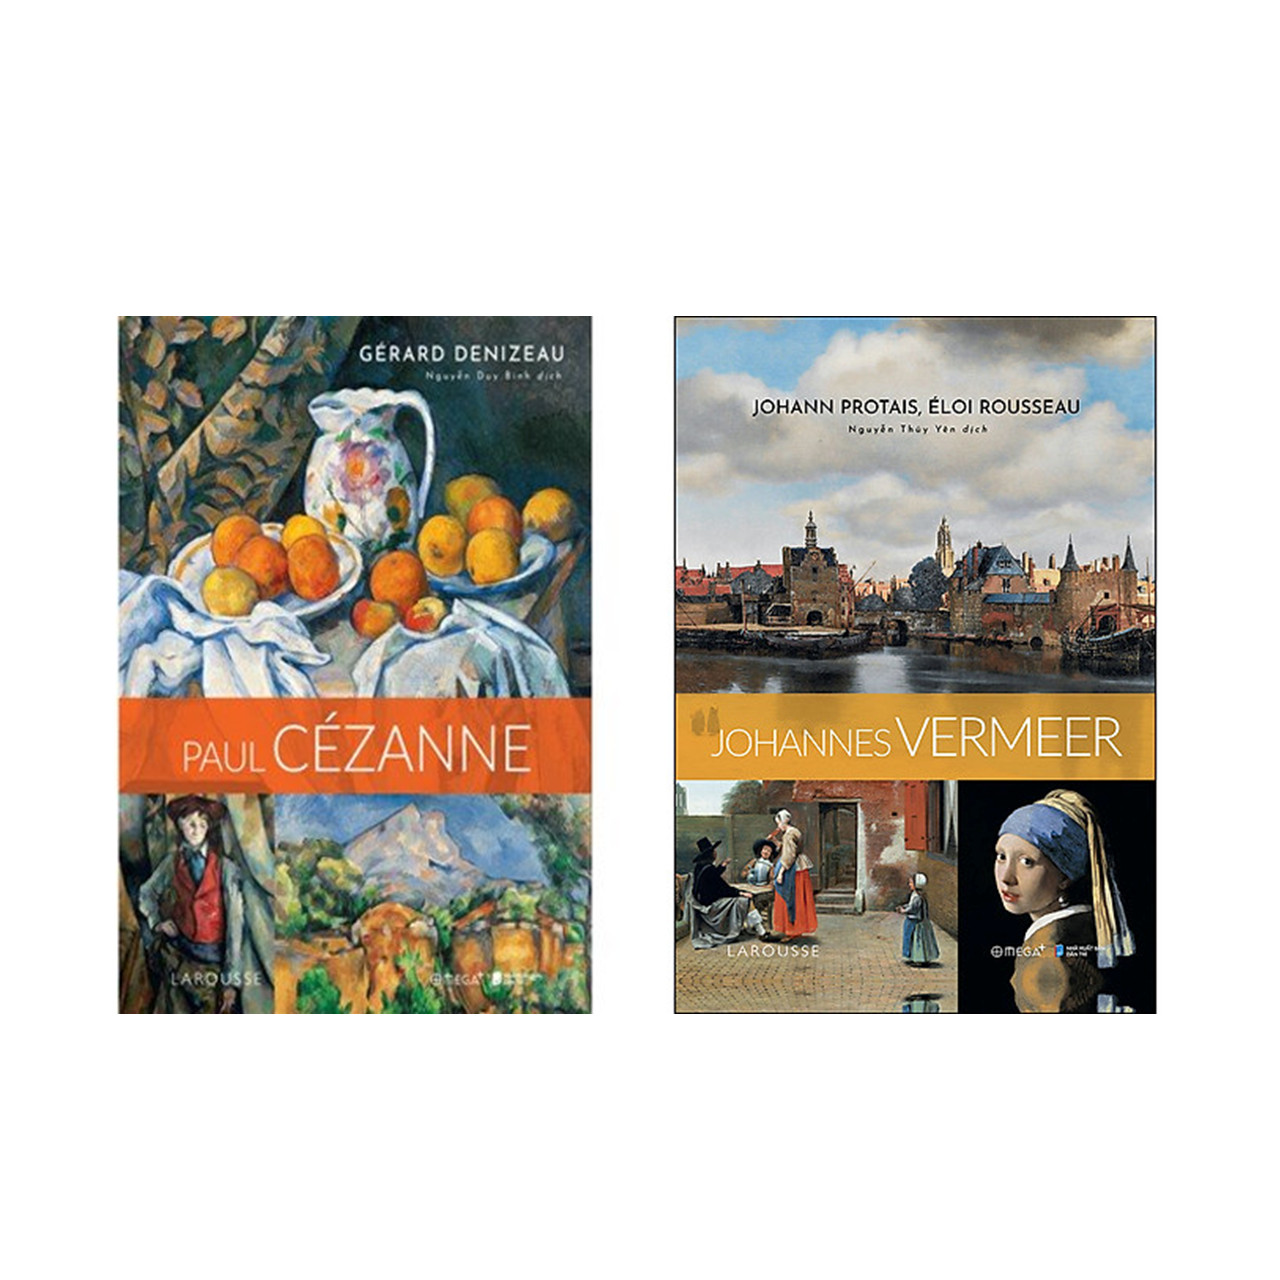 Combo Danh Họa Thế Giới: Paul Cézanne - Con Người Sơ Khai Của Nghệ Thuật Mới + Johannes Vermeer - Thời Kỳ Hoàng Kim Của Hội Họa Hà Lan